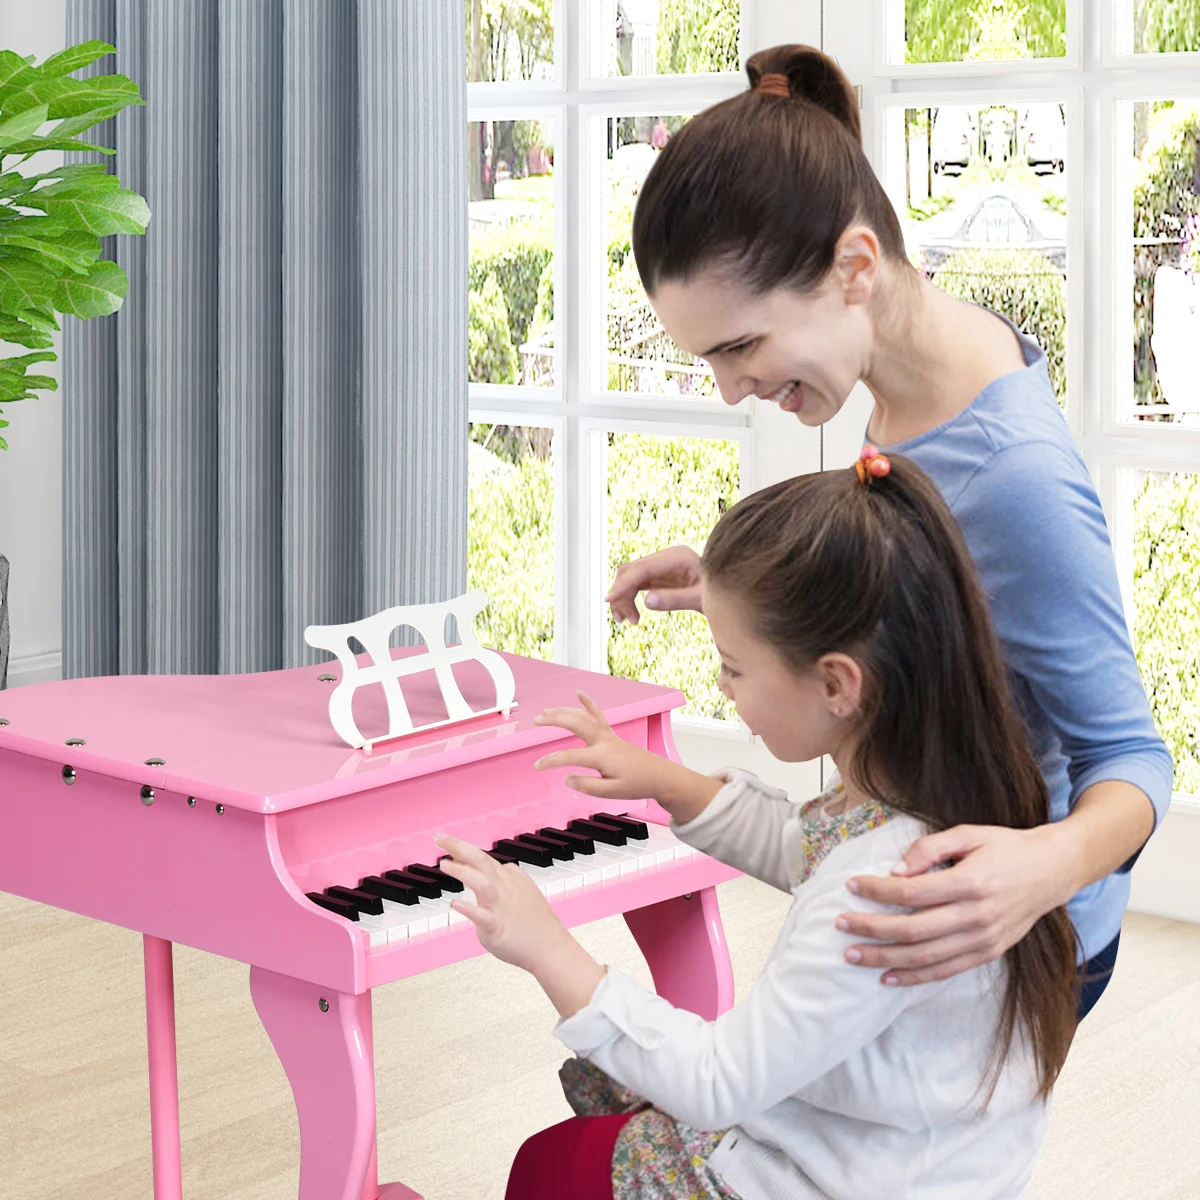 Piano infantil, madeira lacado, rosa - Bazar Paris